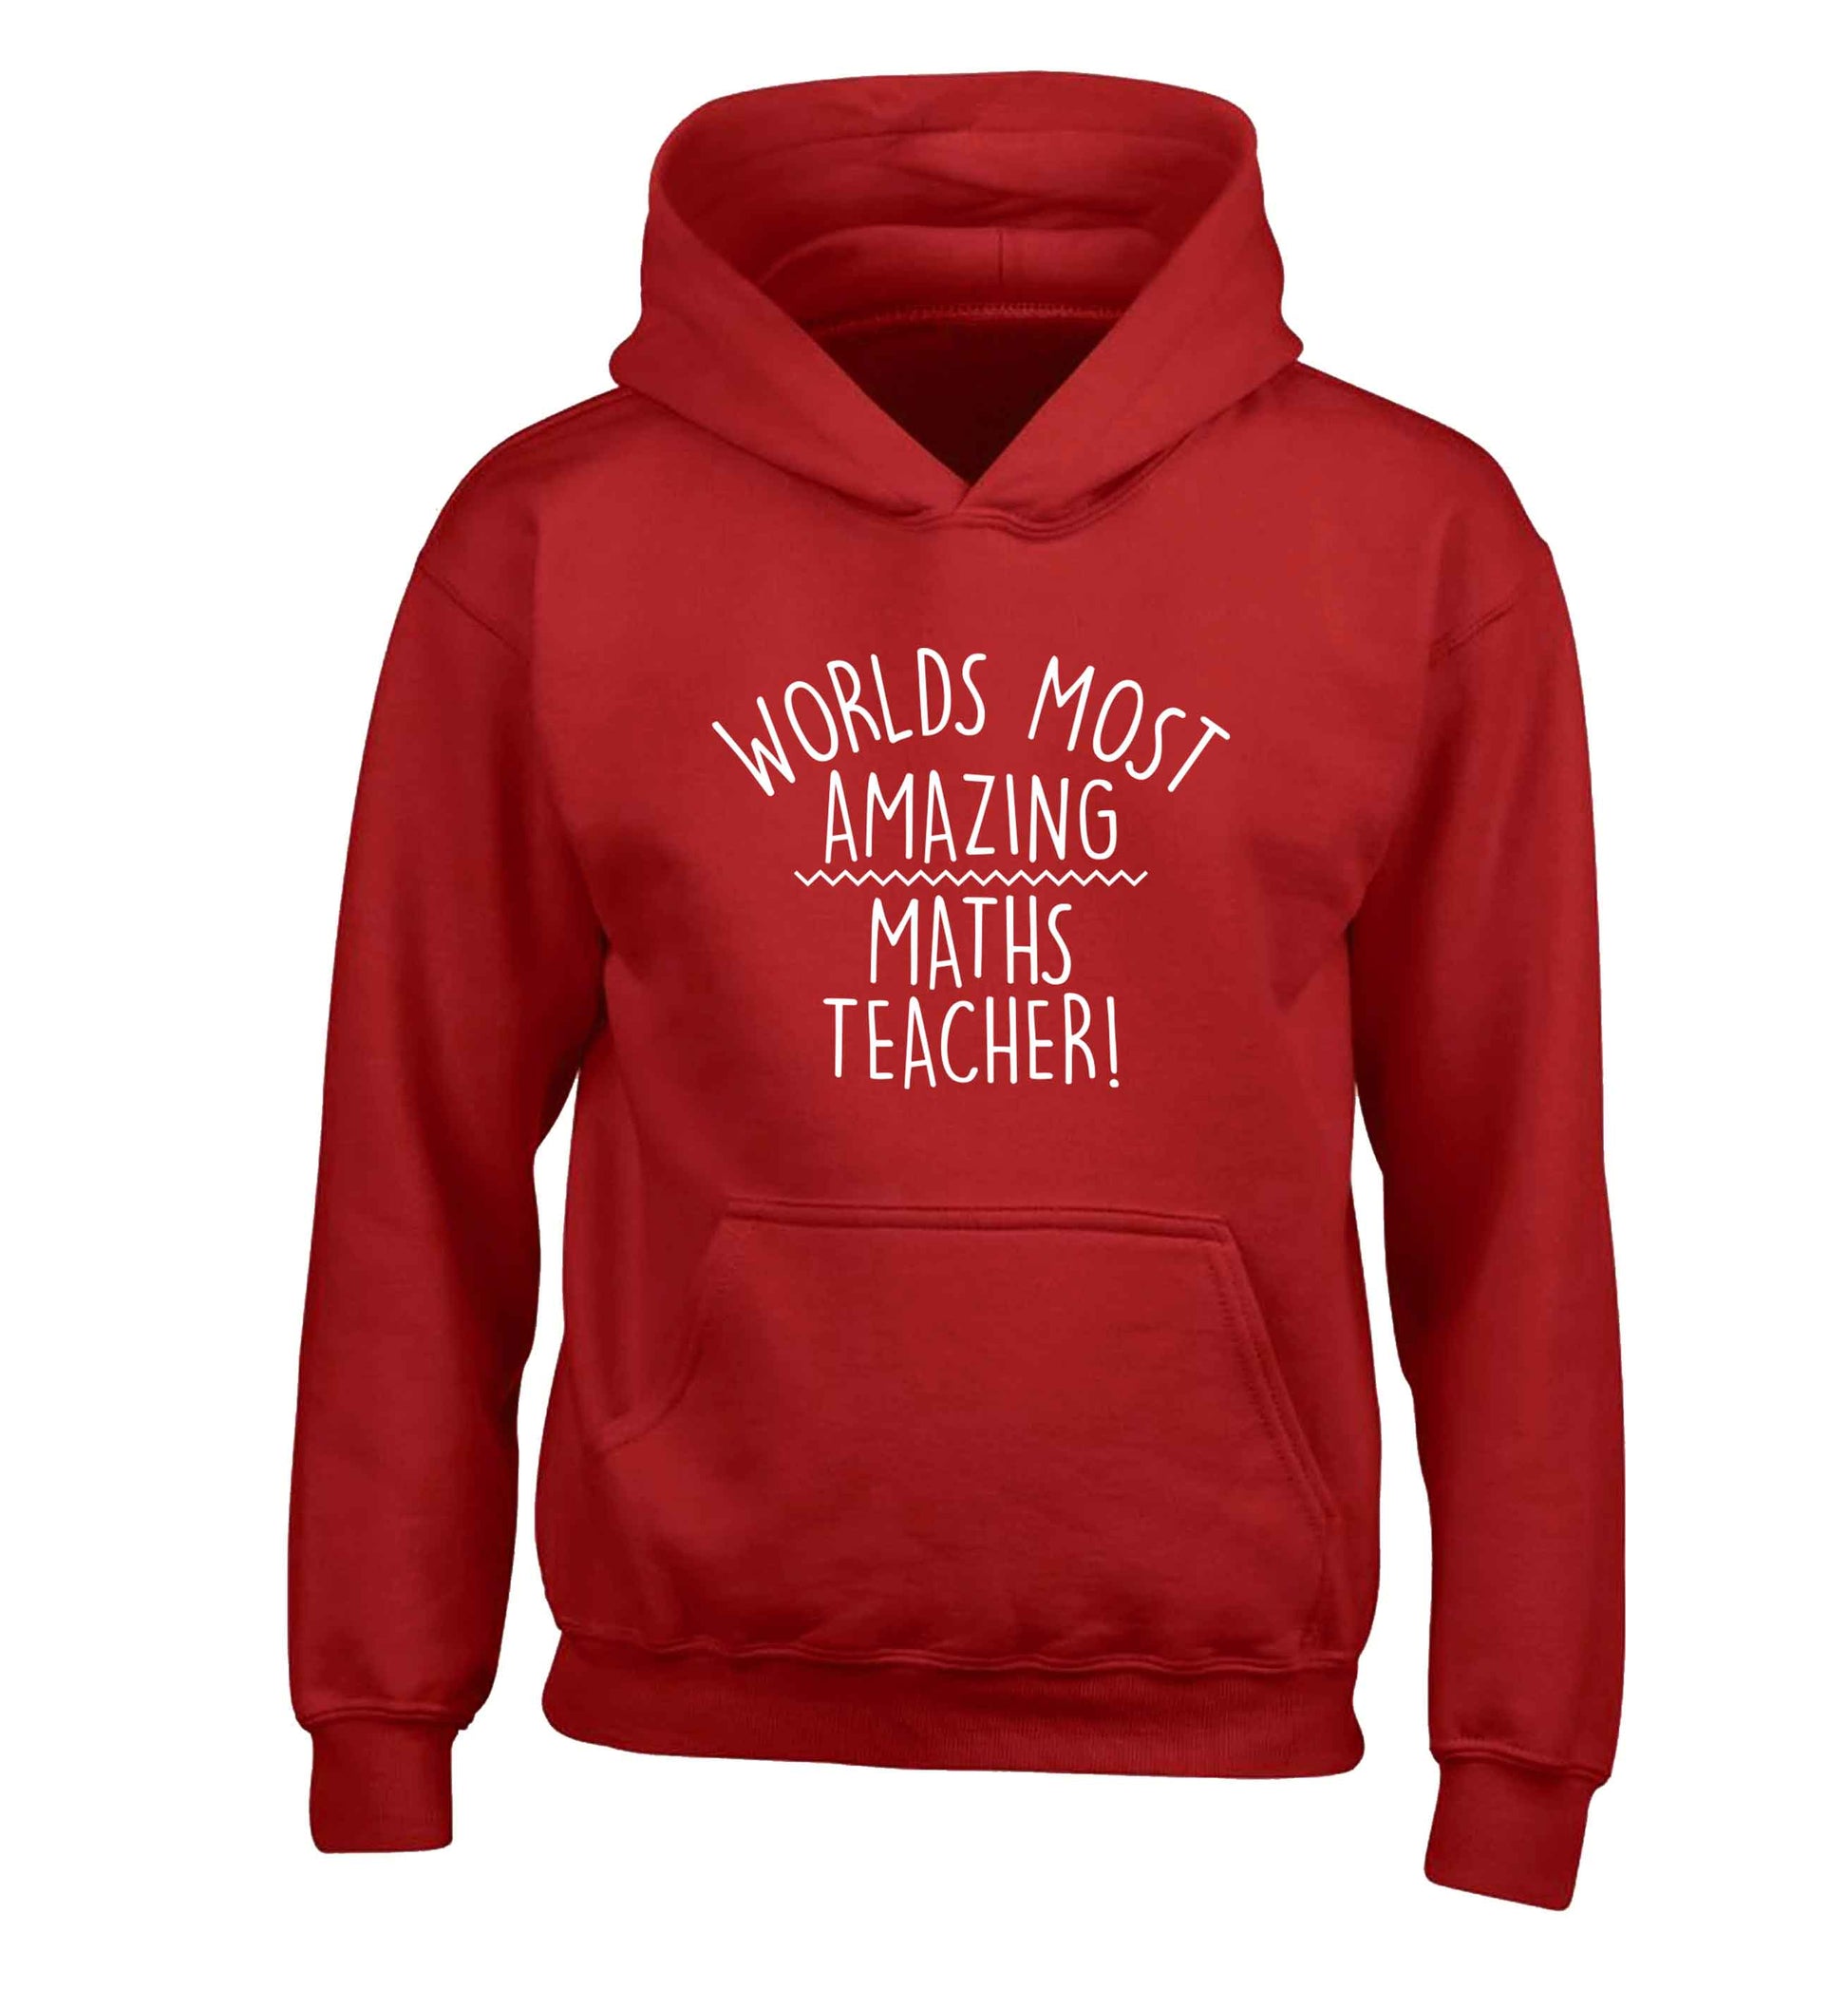 Worlds most amazing maths teacher children's red hoodie 12-13 Years